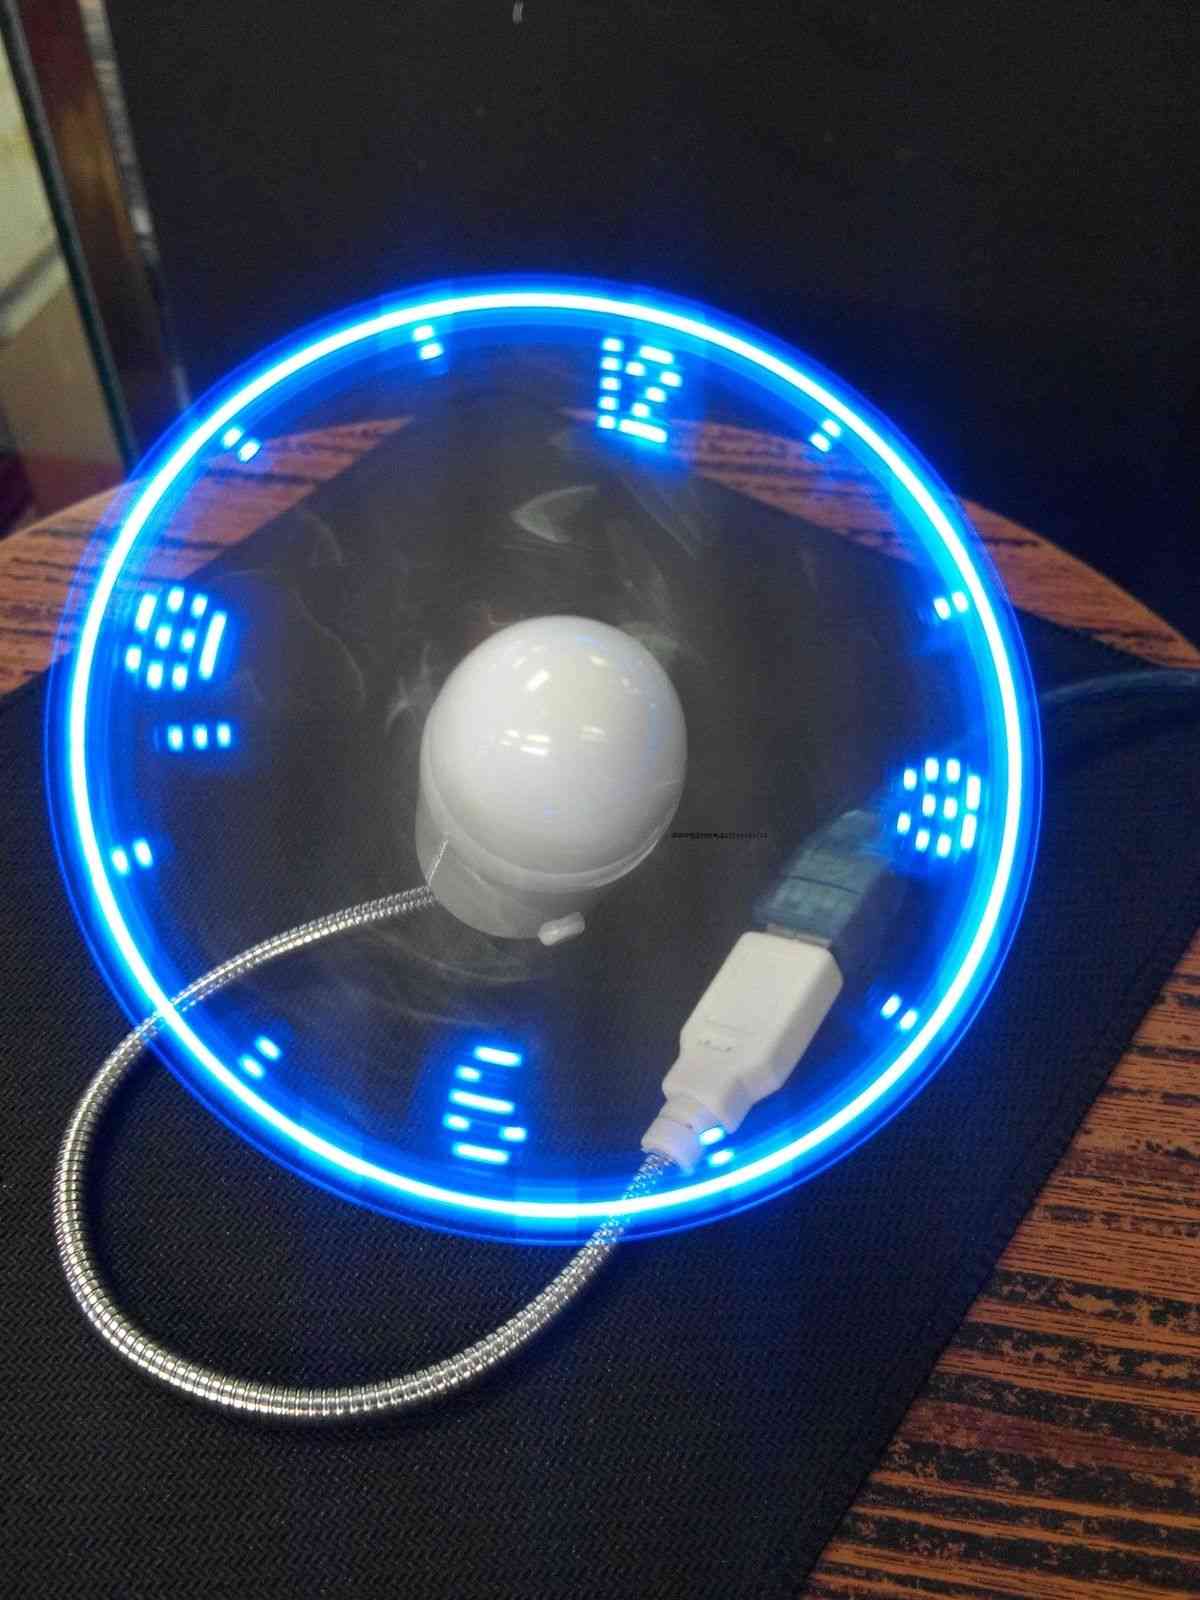 Mini luz led flexible y ajustable, ventilador usb, reloj de tiempo (azul)